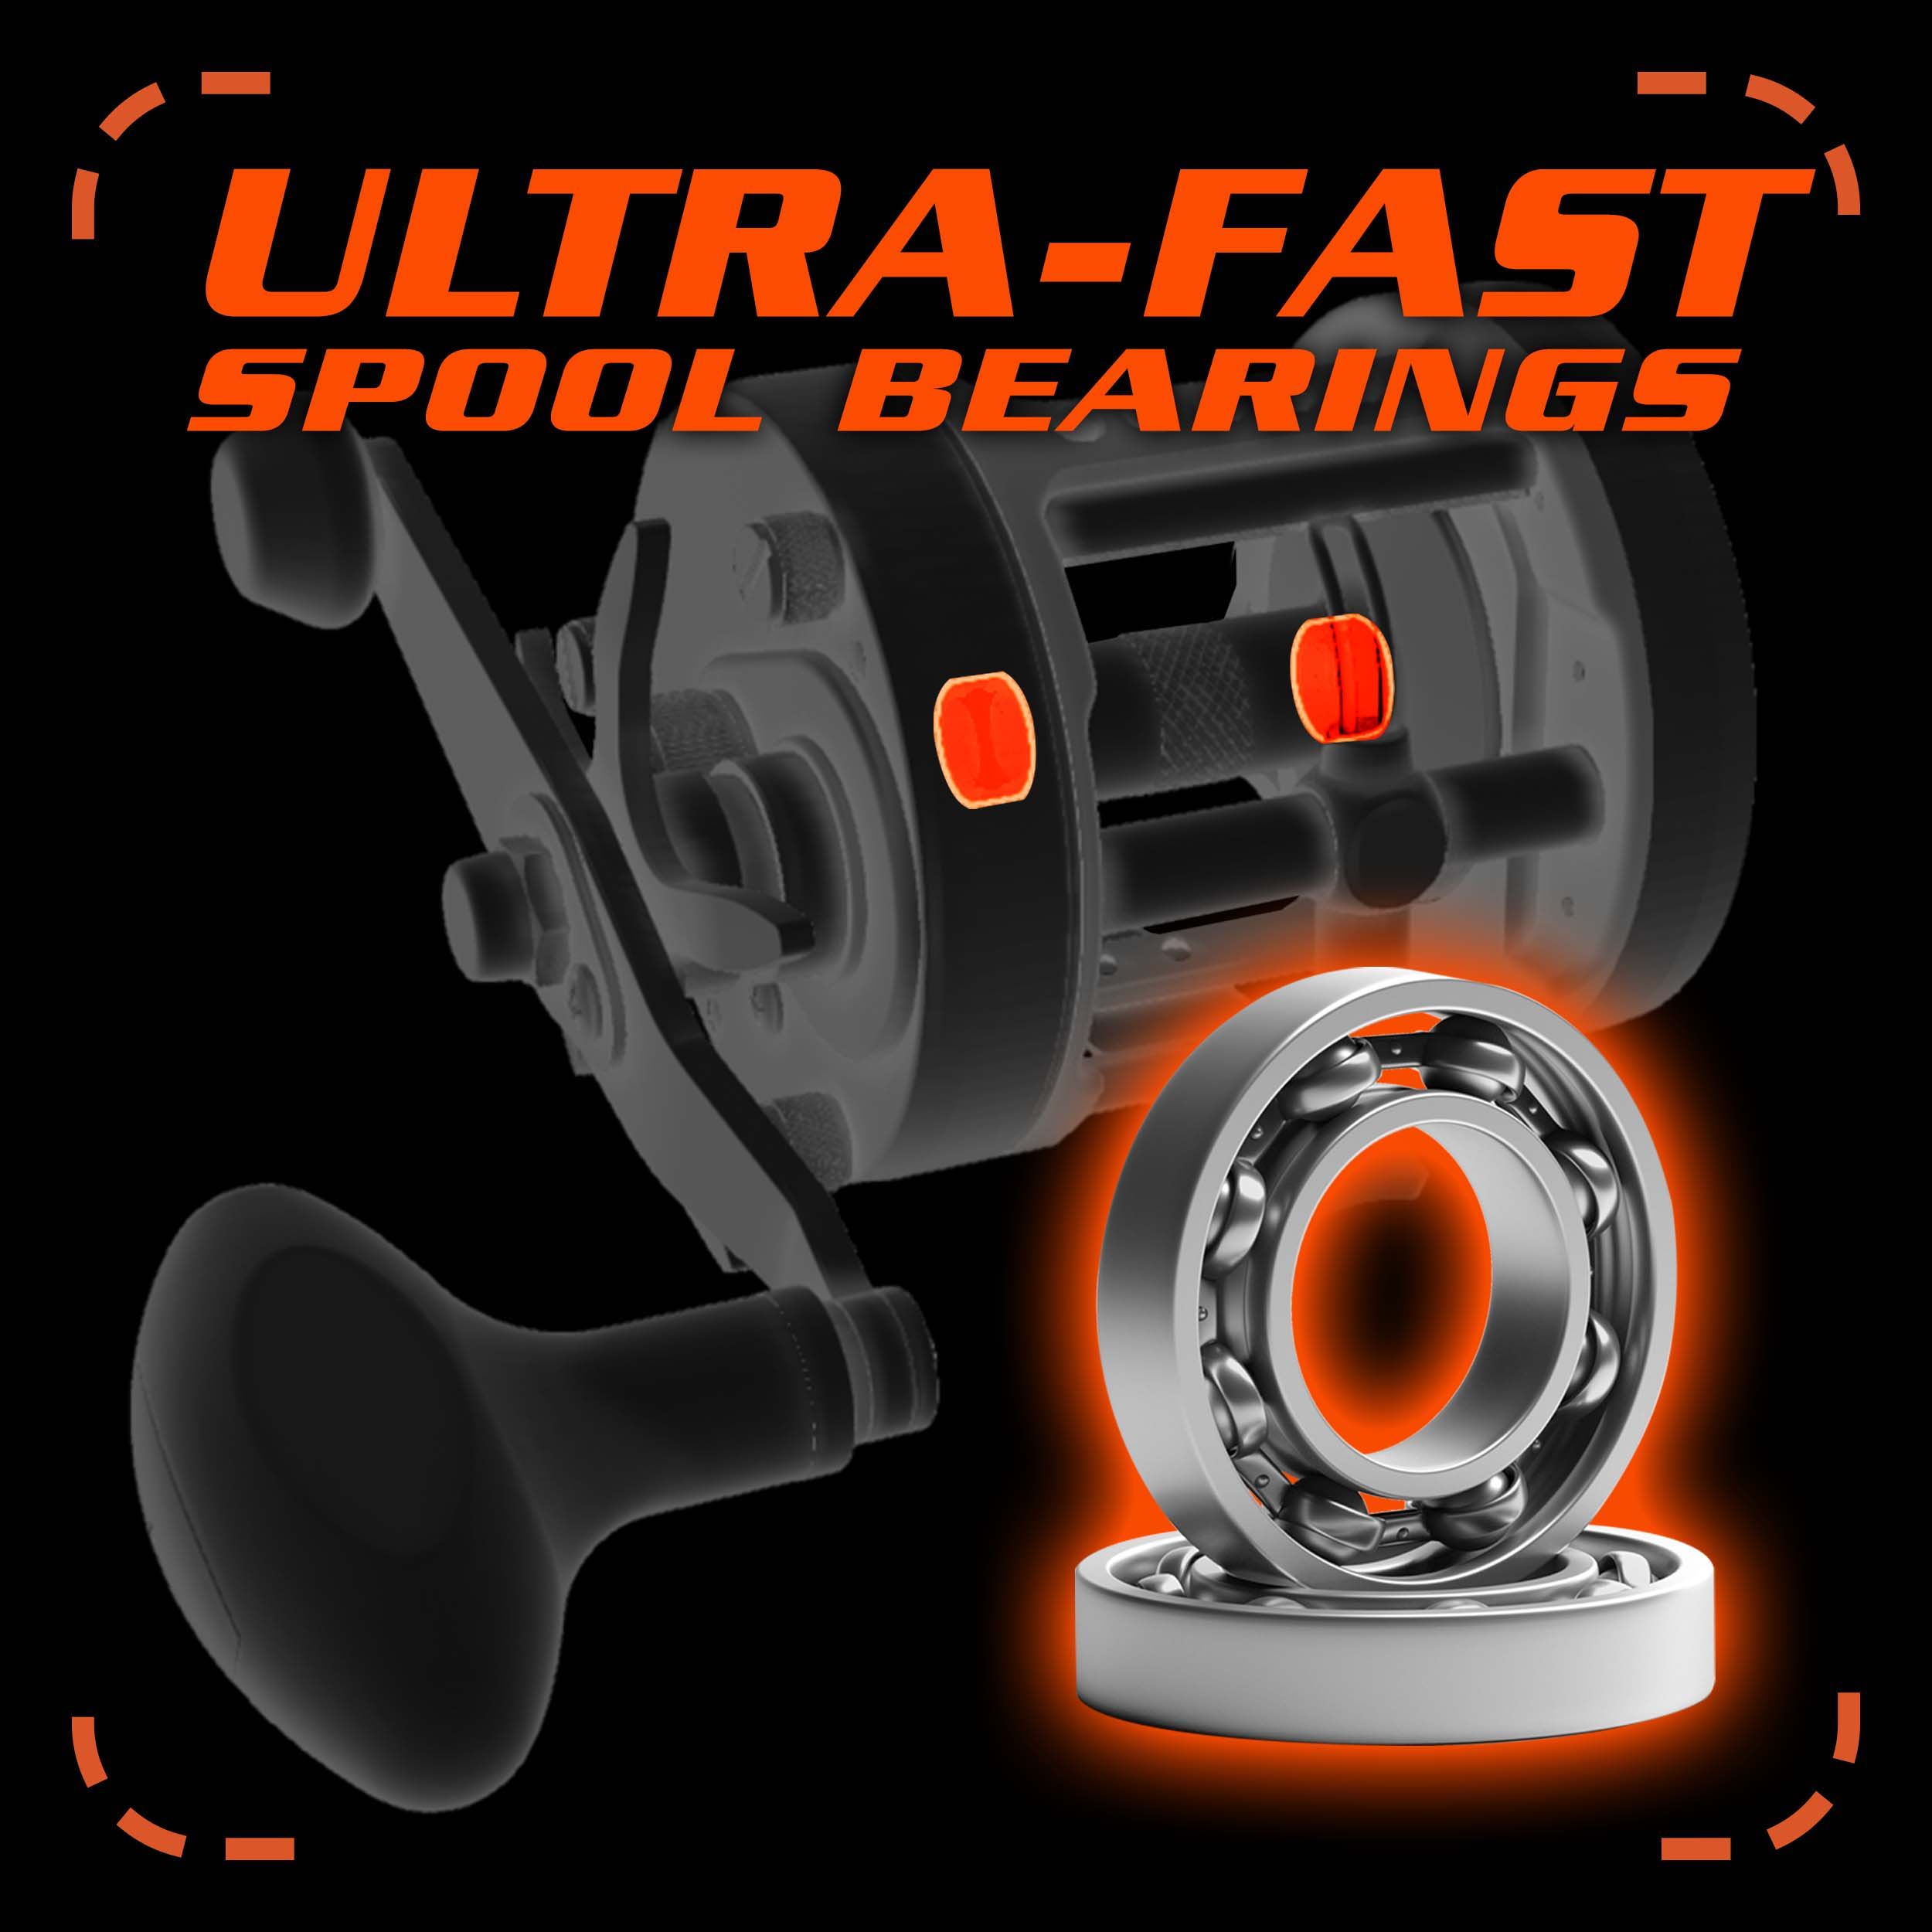 Ultra-fast spool bearings